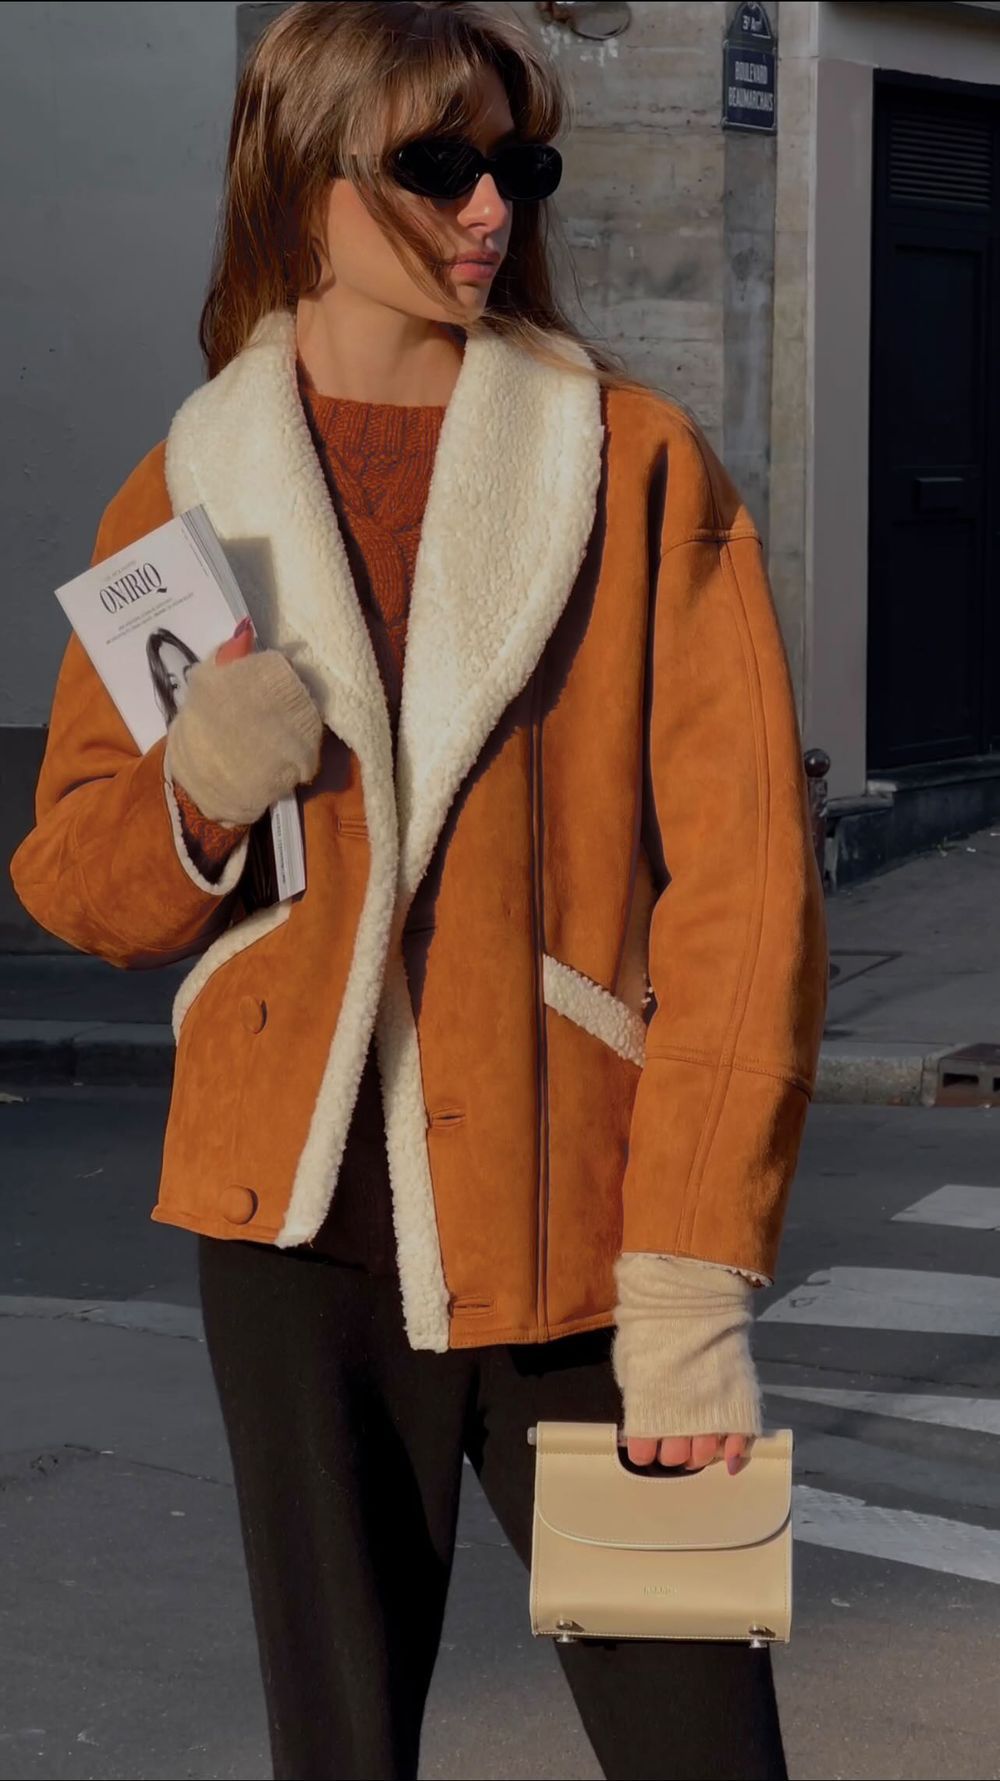 French girl Winter outfits Cognac sheepskin coat maralafontan